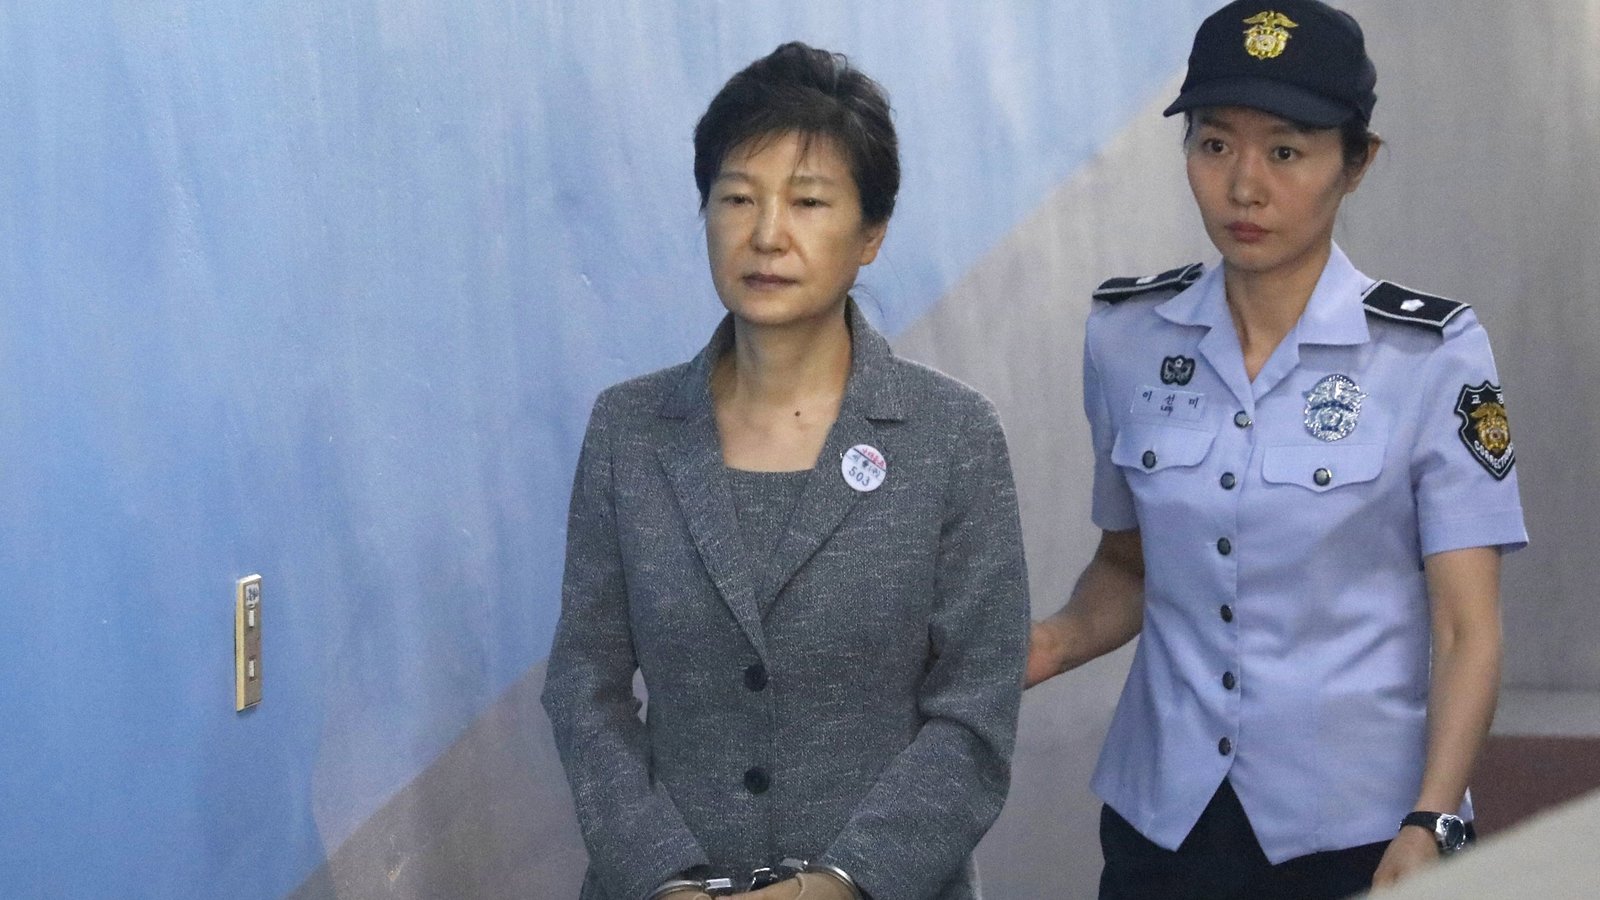 Južnokorejski sud potvrdio 20 godina zatvora za bivšu čelnicu Park Geun-hye